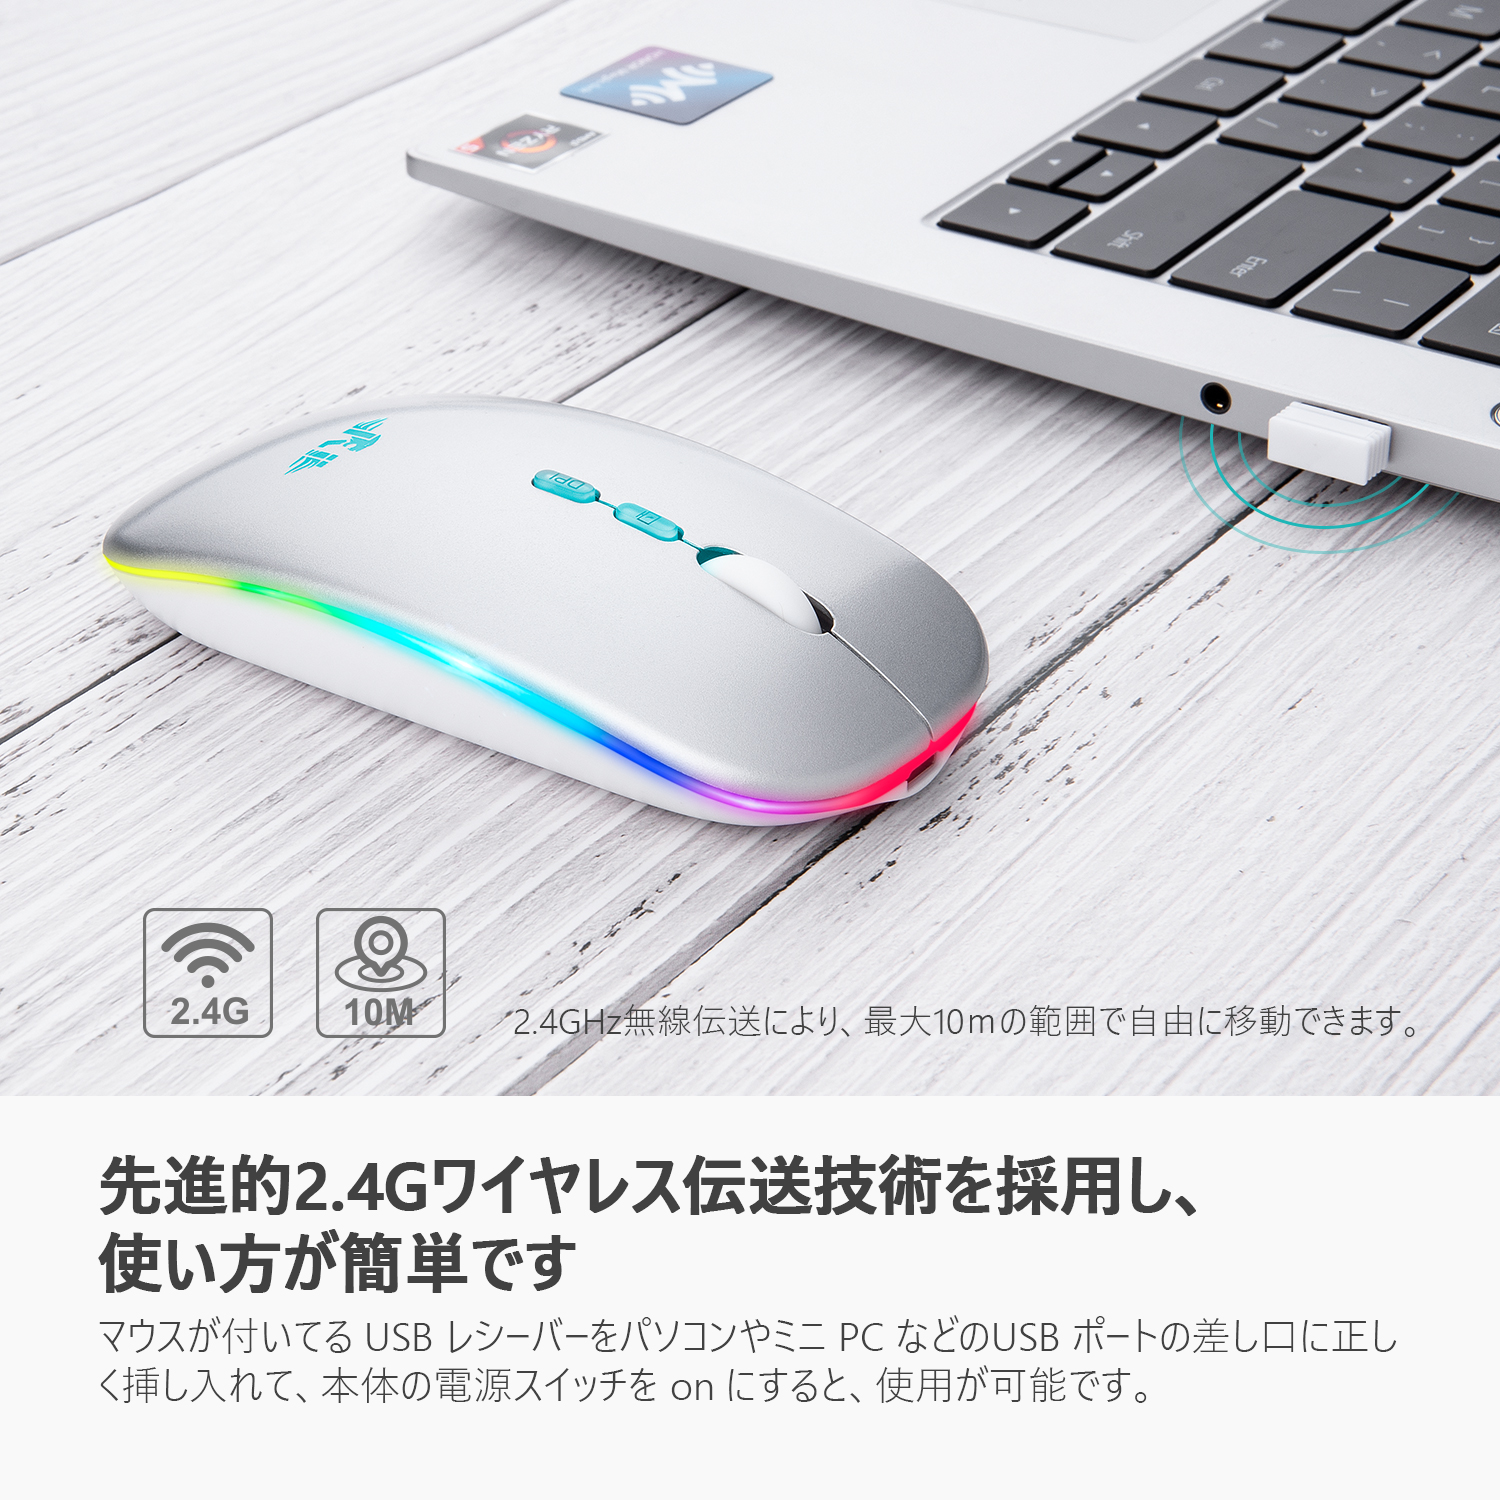 ノートパソコン 激安 持ち歩き USB 無線マウス - www.zarbod.com